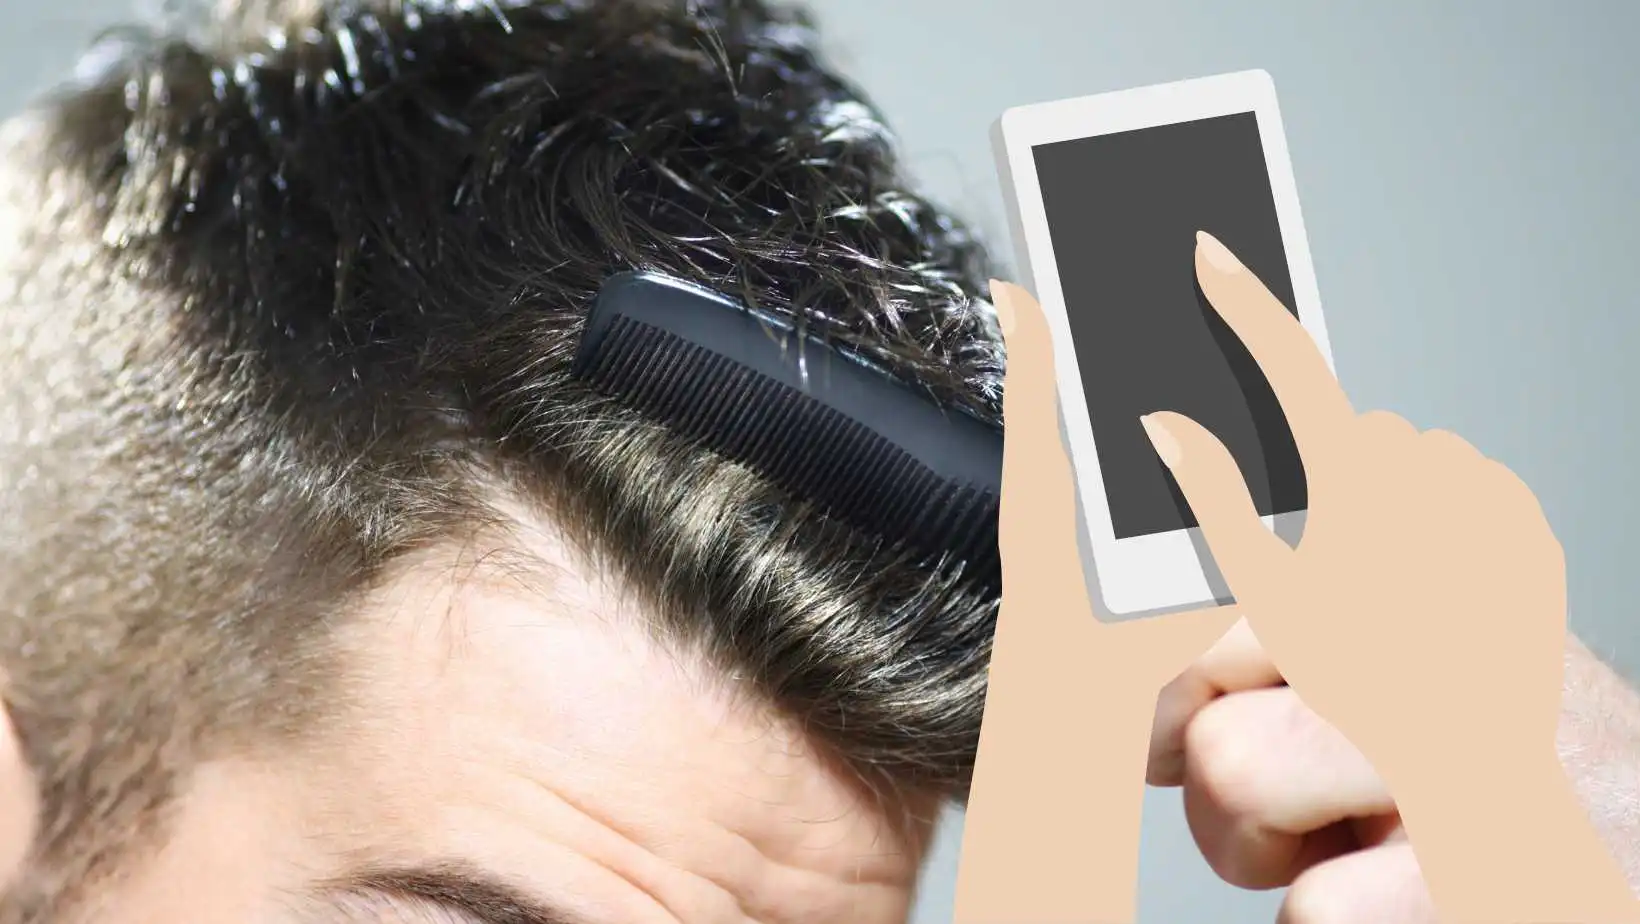 Imagem mostrando um penteado e uma mão segurando um celular para demonstrar o aplicativo que testa penteados